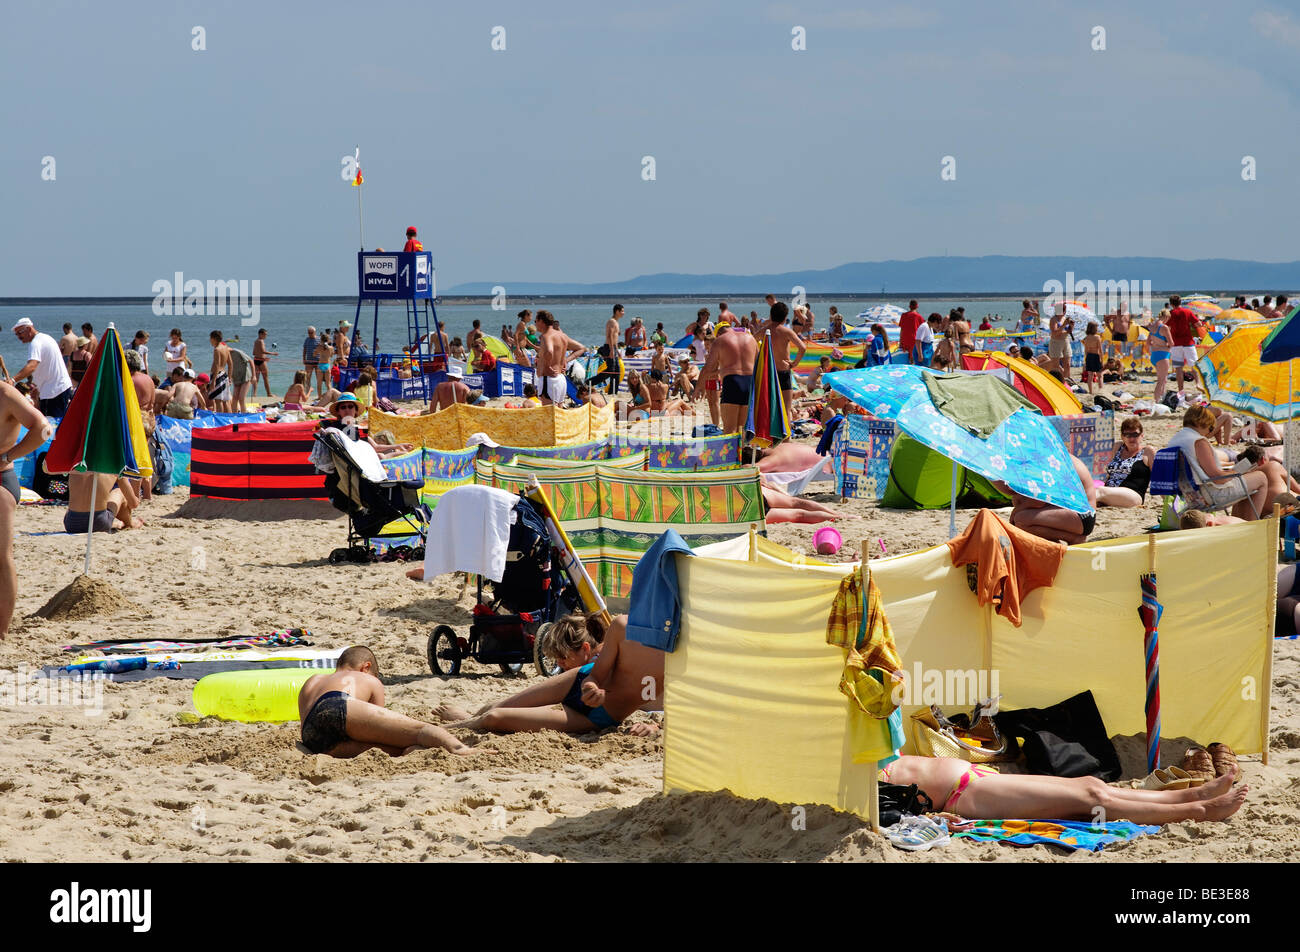 Les gens sur la plage de l'île de Usedom, Swinoujscie, Pologne, Europe Banque D'Images